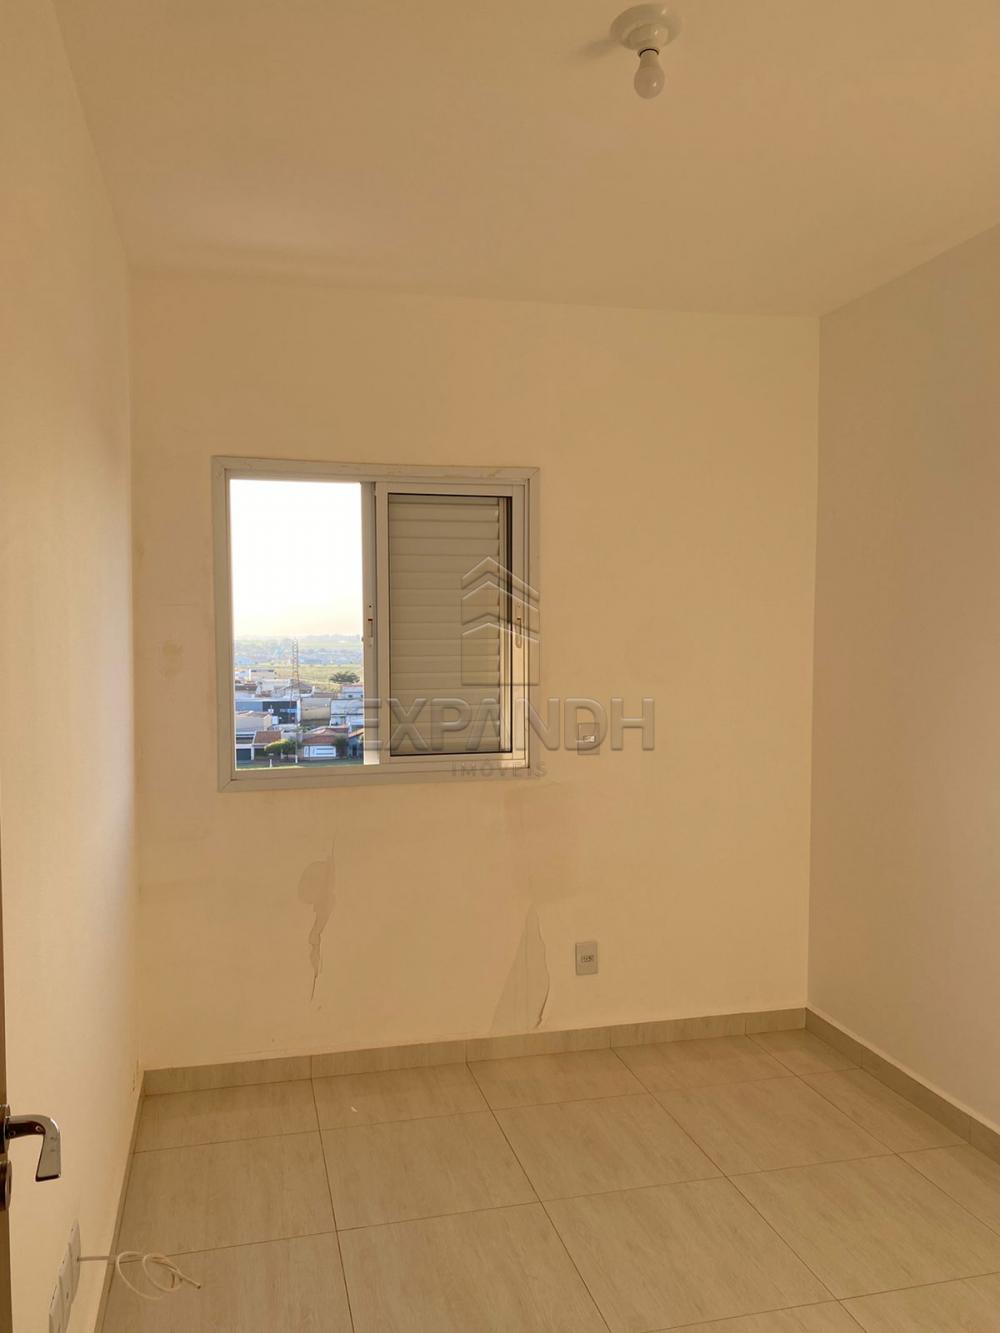 Alugar Apartamentos / Padrão em Sertãozinho R$ 1.200,00 - Foto 8